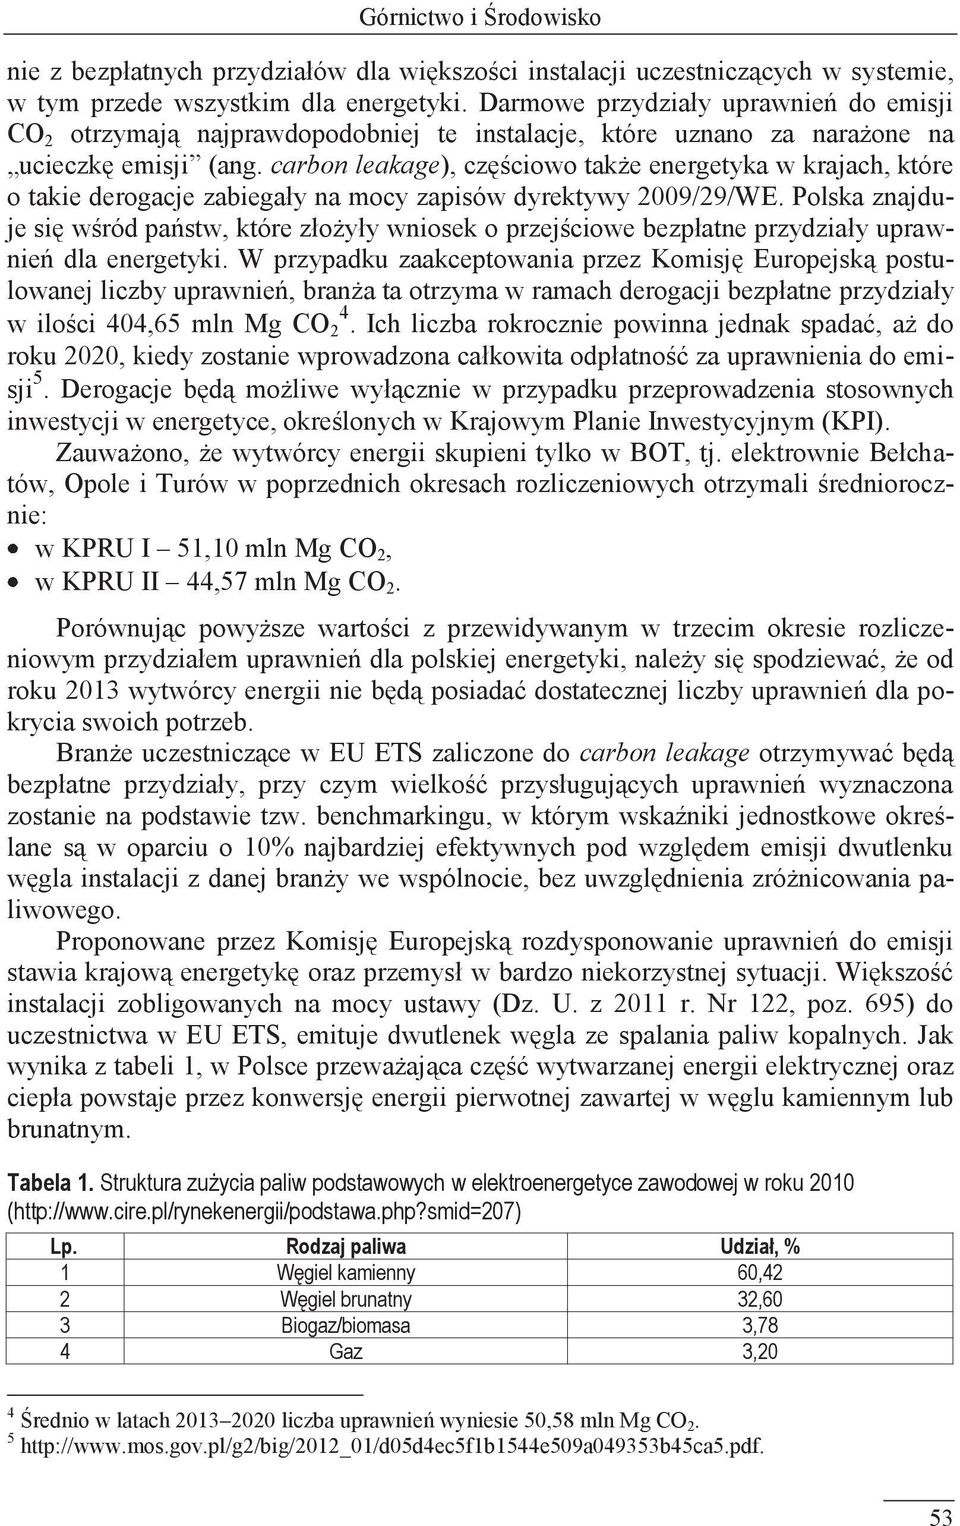 carbon leakage), częściowo także energetyka w krajach, które o takie derogacje zabiegały na mocy zapisów dyrektywy 2009/29/WE.